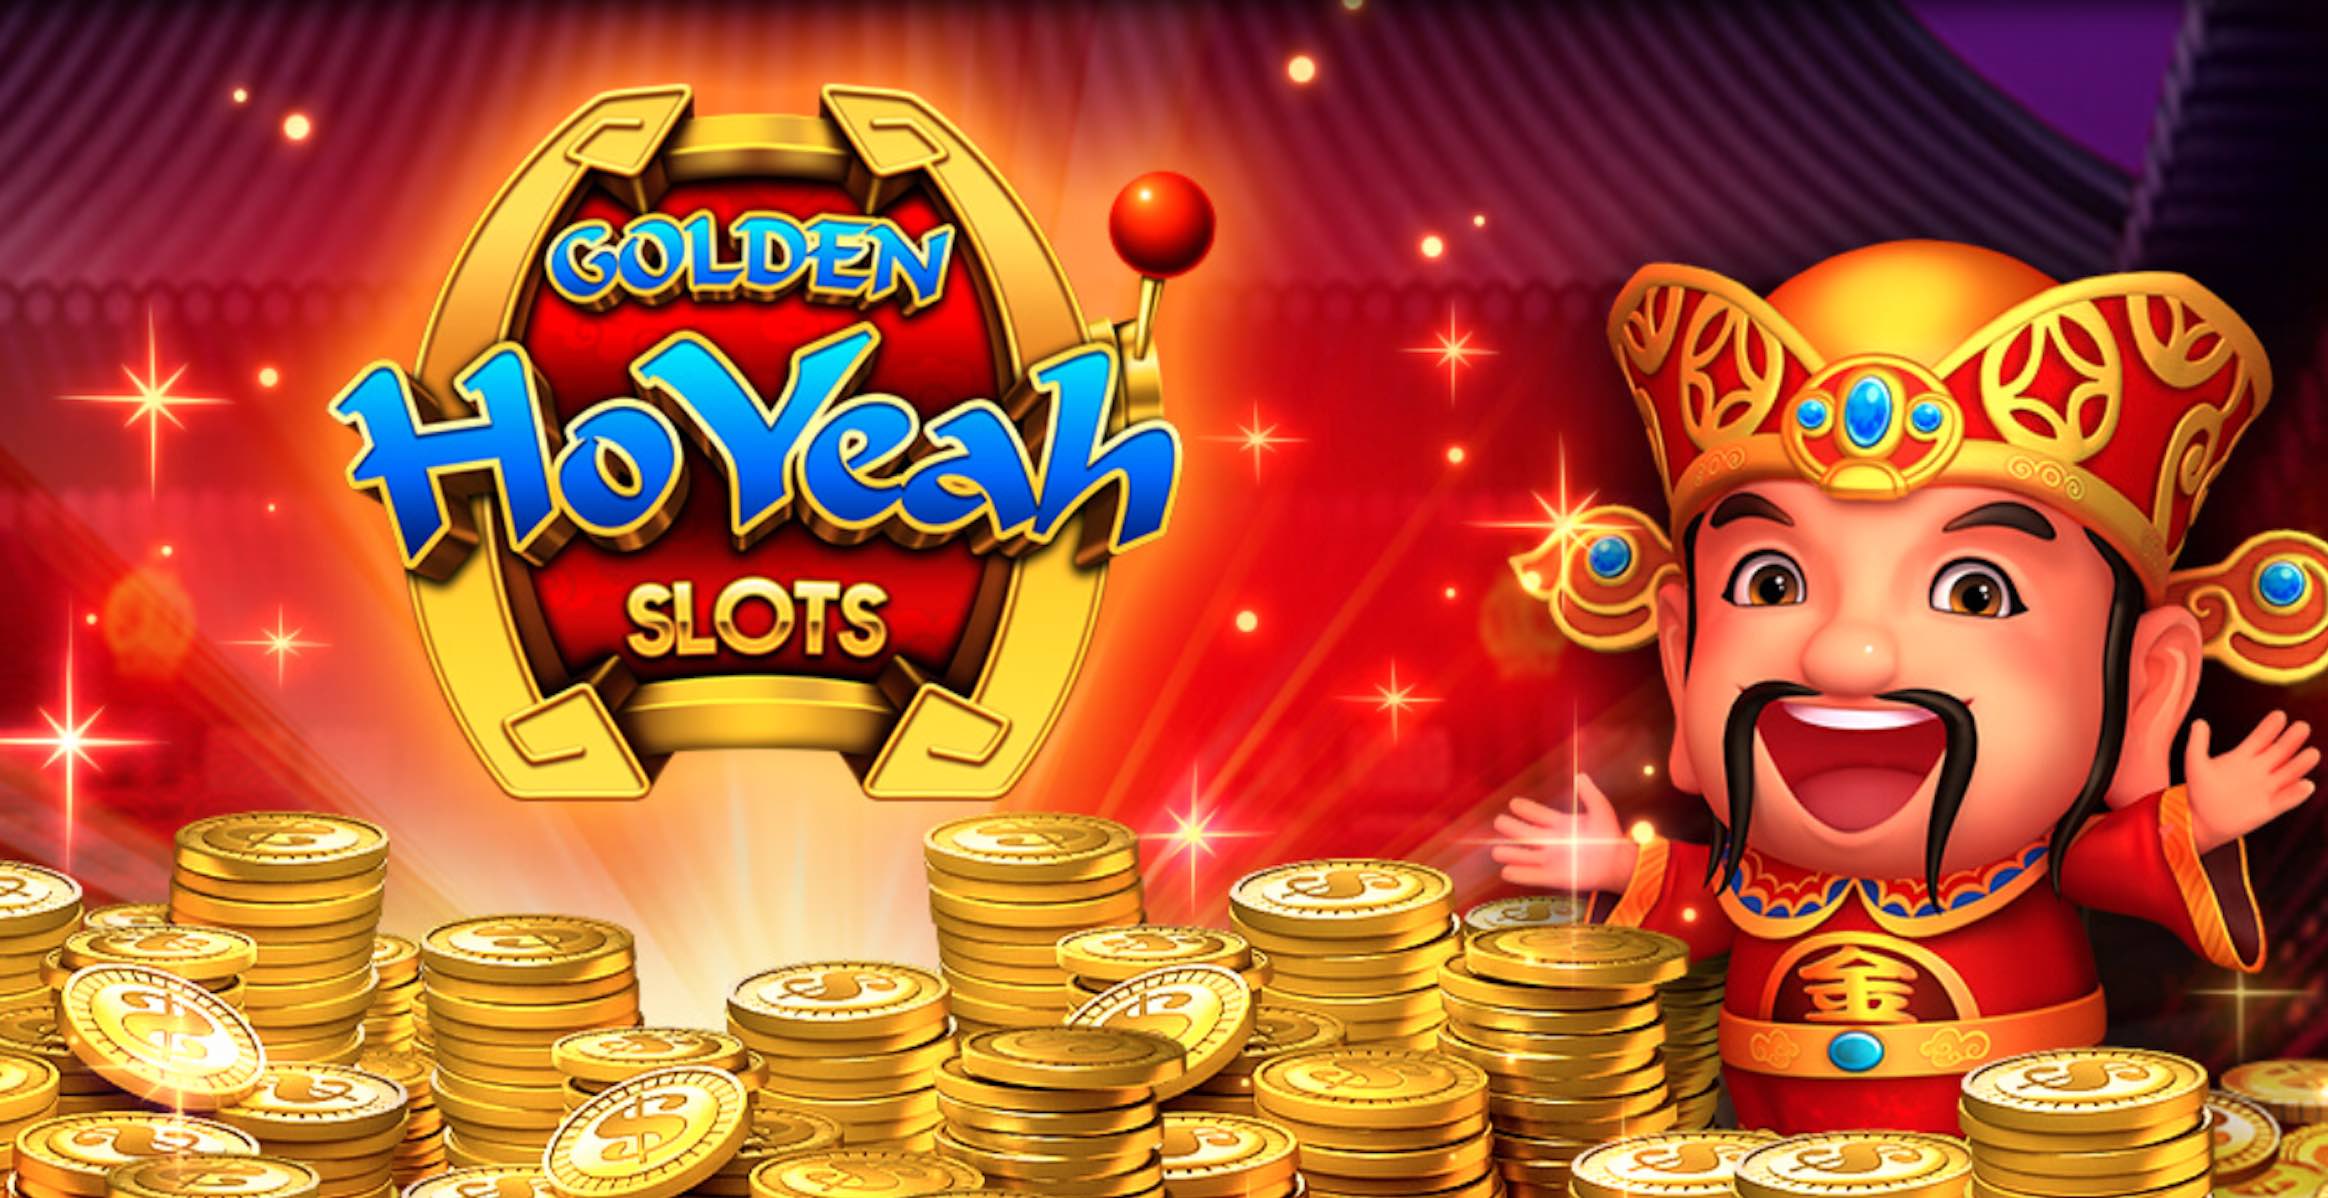 Golden Hoyeah Slots カジノスロットゲームとフィッシングゲームを1つのアプリで楽しめる 100万ダウンロード突破の大人気スマホゲーム Naoyuki Products